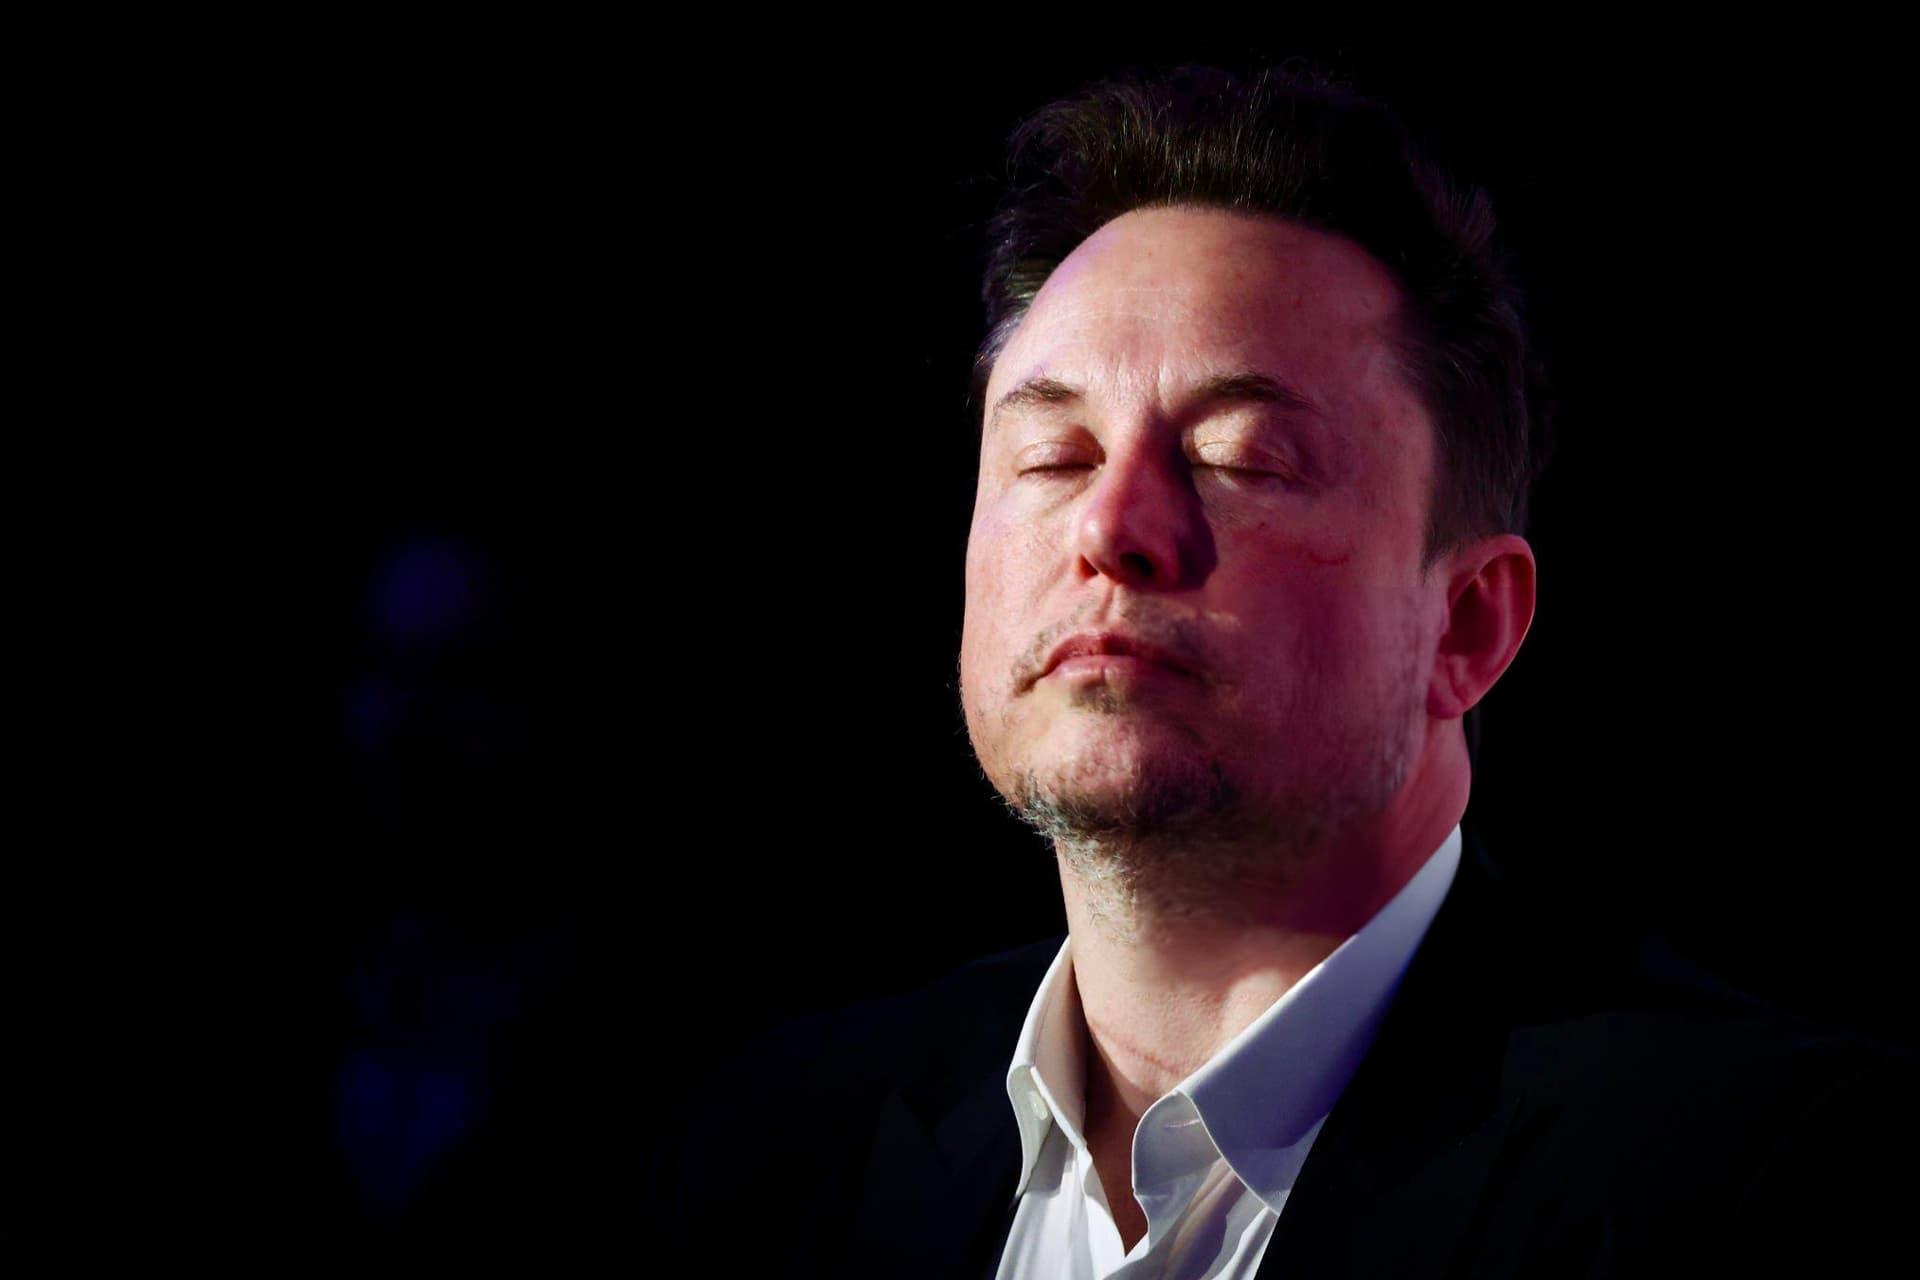 چهره ناراحت ایلان ماسک / Elon Musk با چشن بسته پس زمینه سیاه